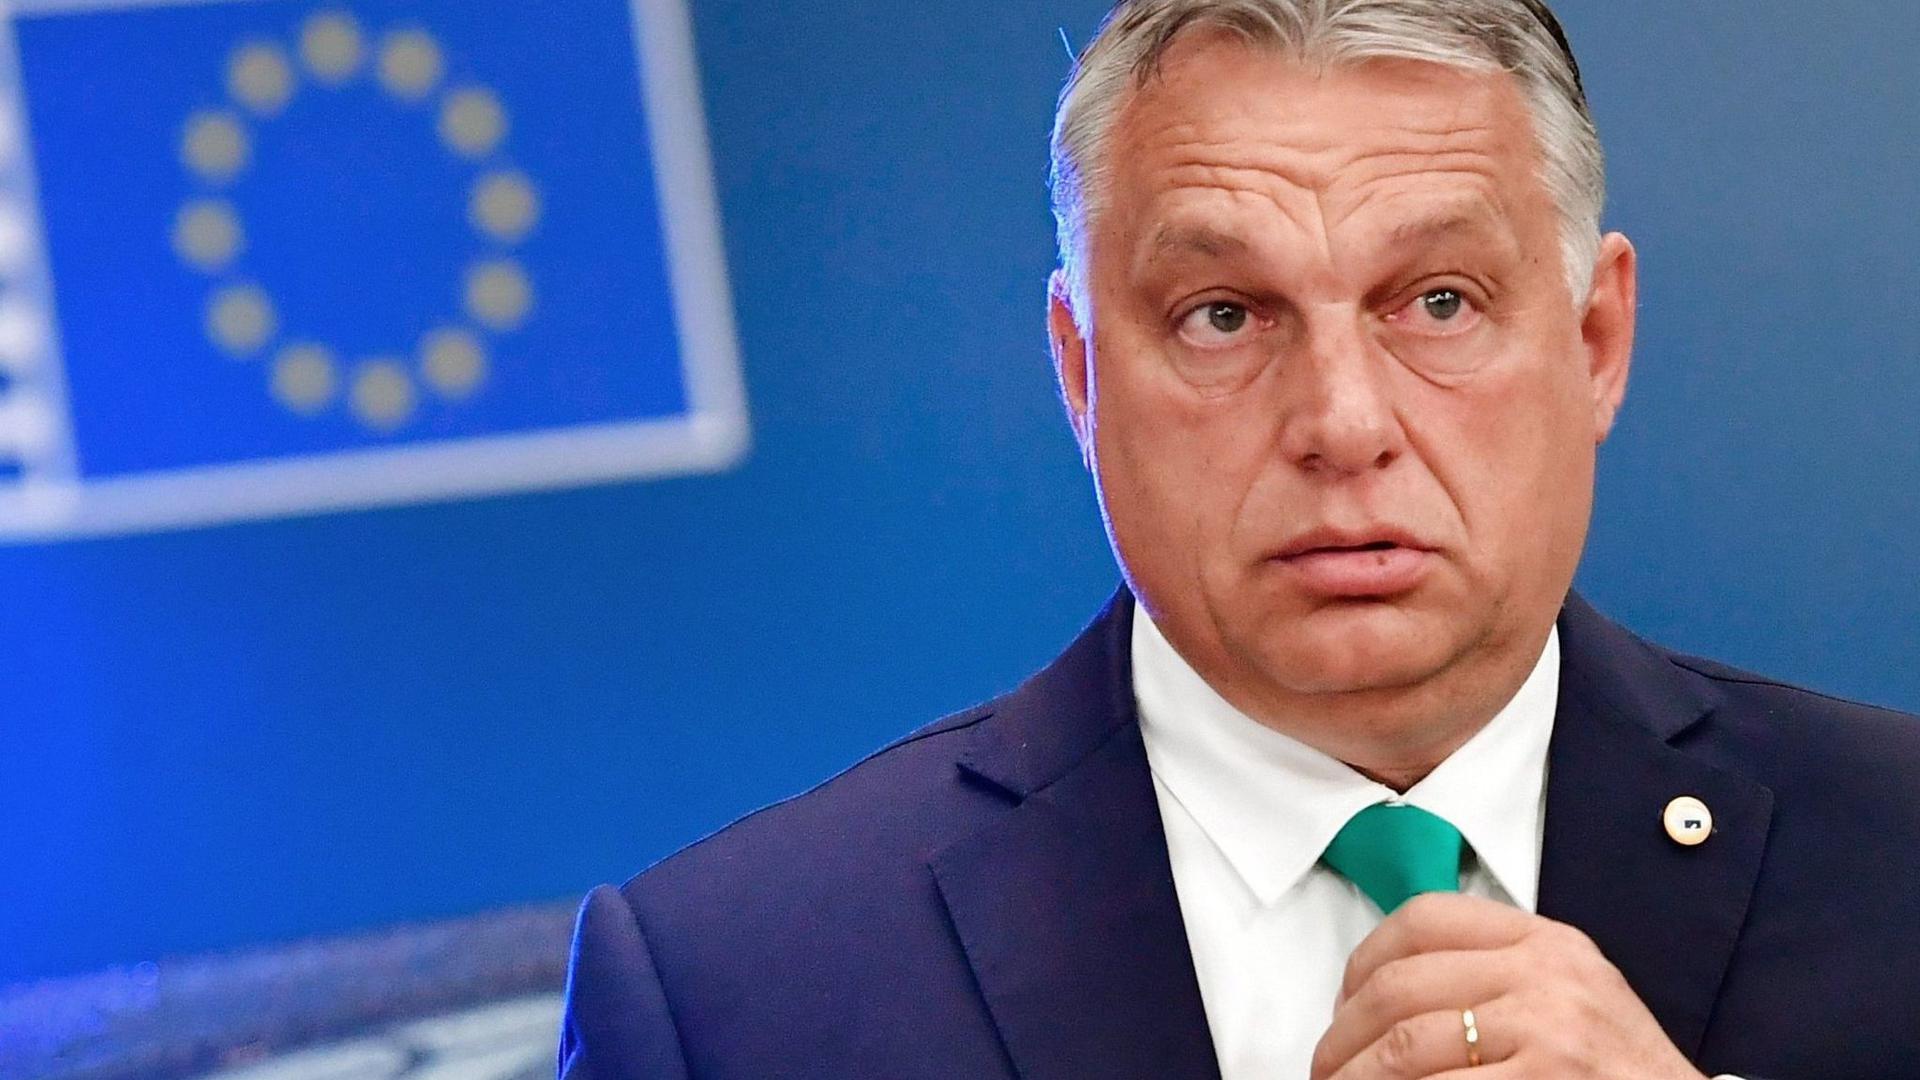 Ungarns Ministerpräsident Viktor Orban während des EU-Gipfel im Juli 2020 in Brüssel.